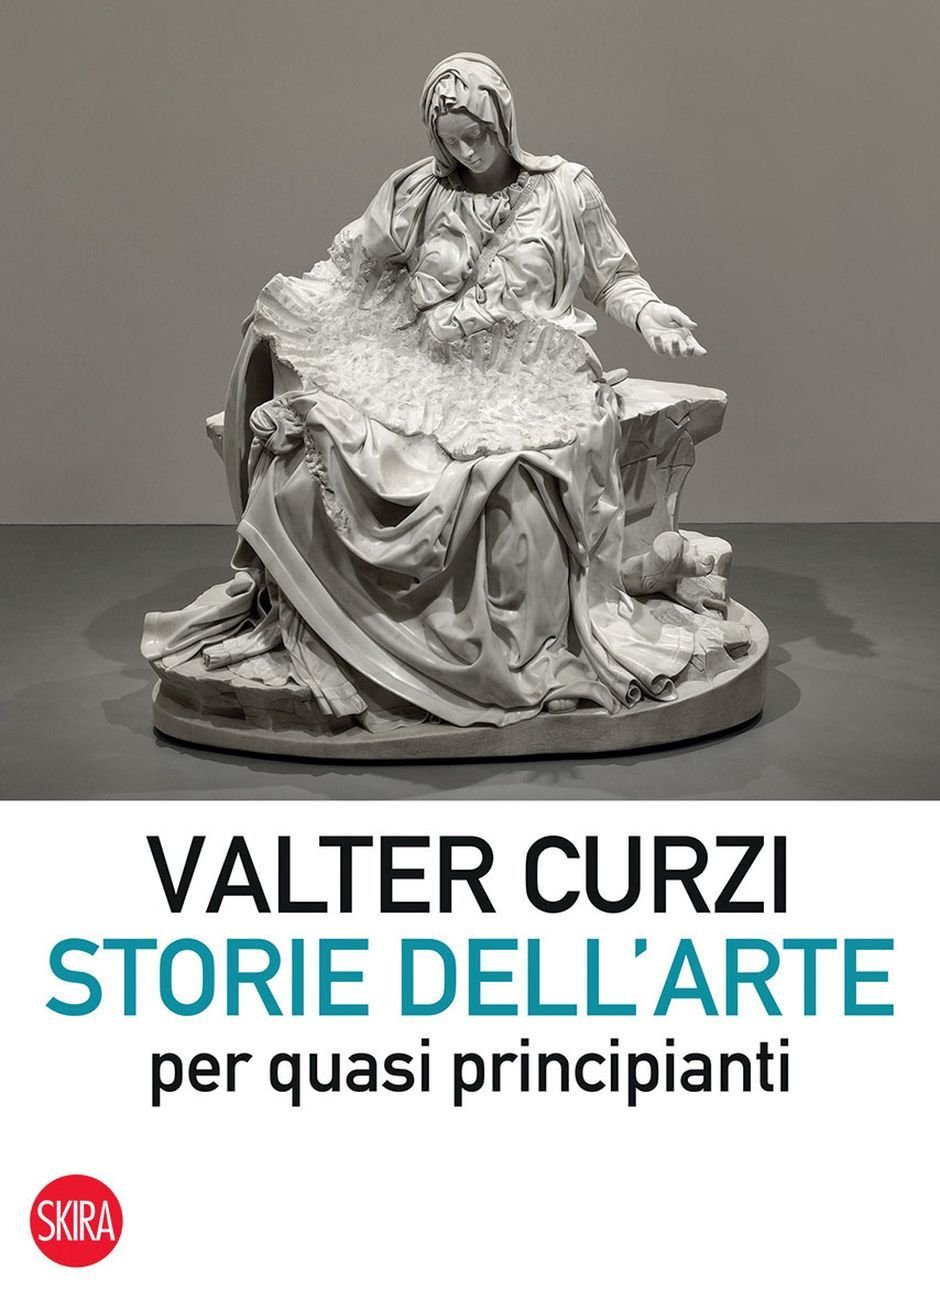 Valter Curzi – Storie dell’arte per quasi principianti (Skira, 2019)